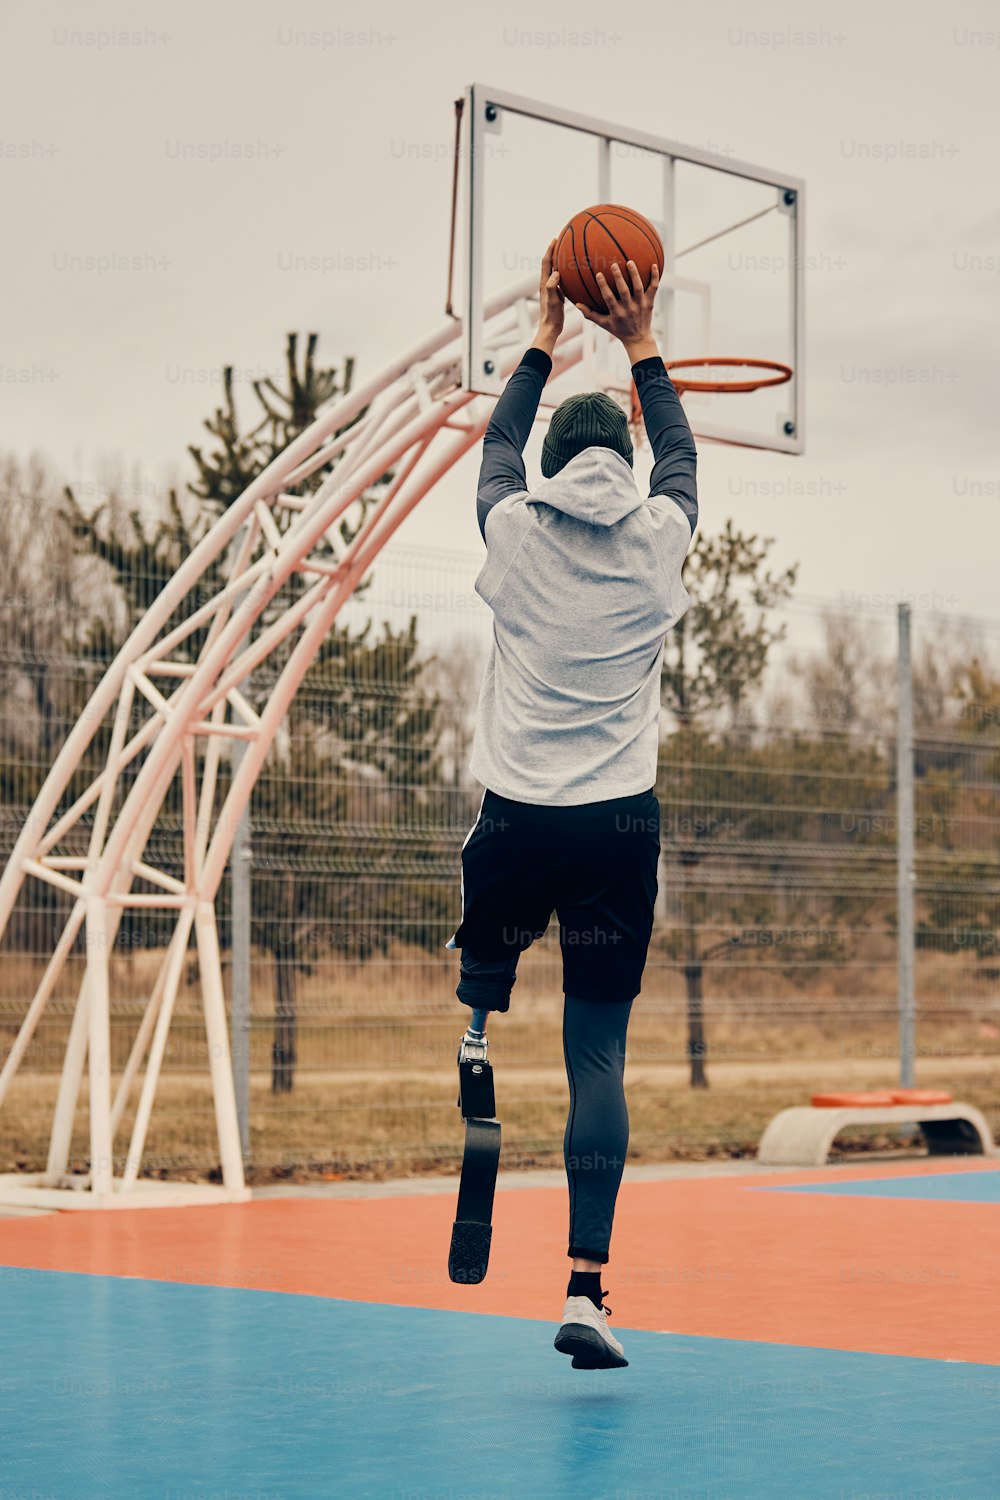 Vista trasera Hombre atlético con pierna artificial disparando al aro mientras juega baloncesto en una cancha al aire libre.